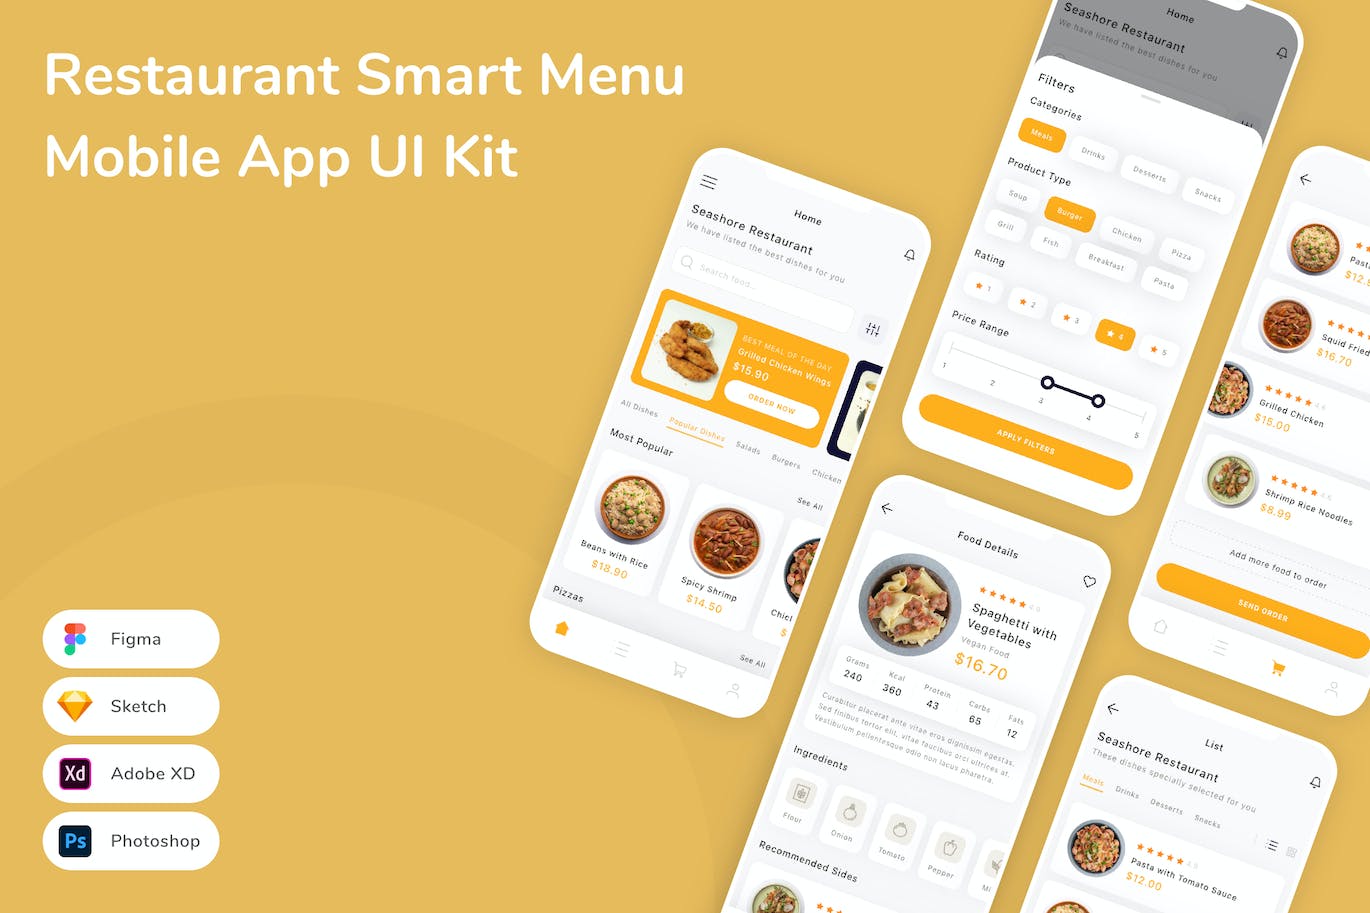 餐厅智能菜单App手机应用程序UI设计素材 Restaurant Smart Menu Mobile App UI Kit APP UI 第1张